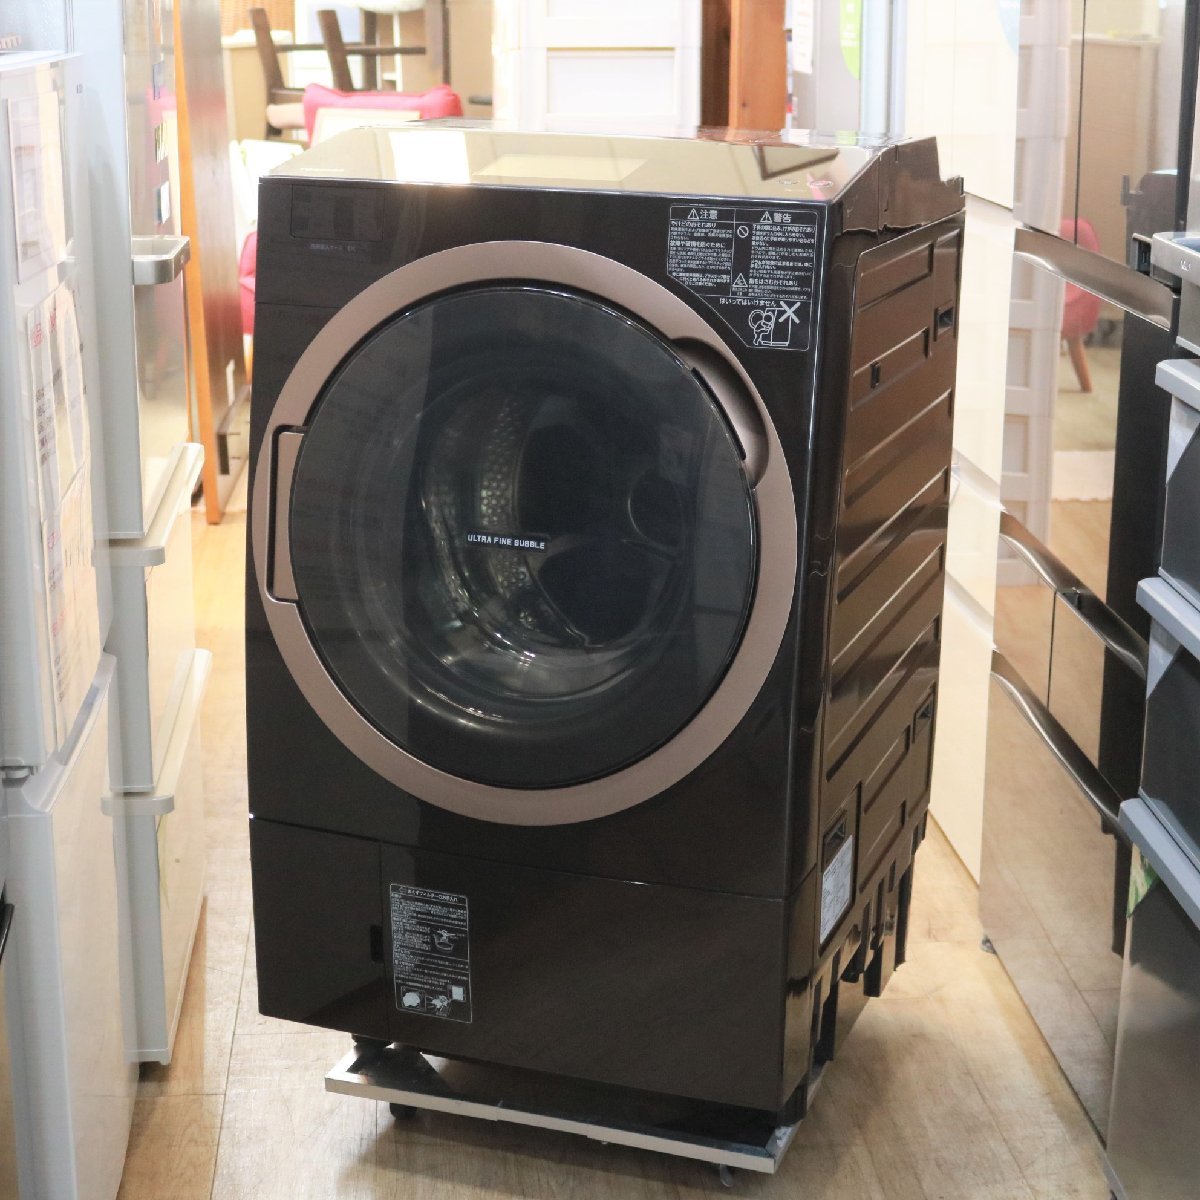 横浜市緑区にて 東芝 ドラム式洗濯乾燥機 TW-127X7L 2019年製 を出張買取させて頂きました。